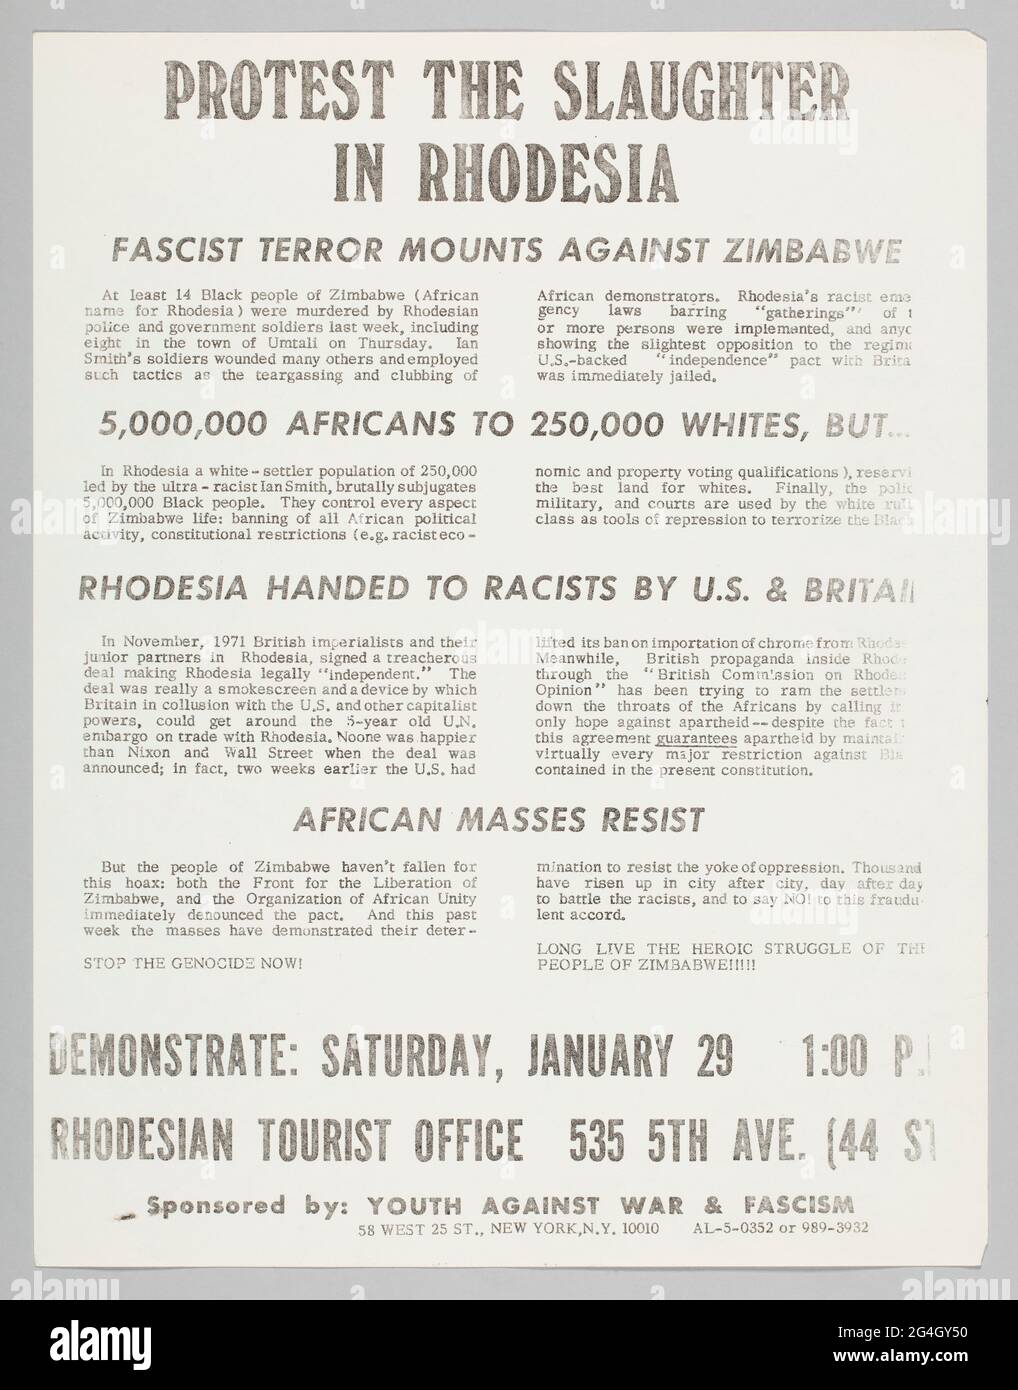 Questo volantino annuncia una protesta contro il massacro in Rhodesia. Il volantino è bianco con testo nero. Il titolo, i sottotitoli e le informazioni sulla posizione sono in grassetto. Il titolo, [PROTESTA IL MASSACRO / IN RHODESIA], è centrato sulla pagina come sono i sottotitoli [IL TERRORE FASCISTA MONTA CONTRO LO ZIMBABWE], [5,000,000 AFRICANI A 250,000 BIANCHI, MA...], [RHODESIA CONSEGNATO AI RAZZISTI da US &amp; GRAN BRETAGNA], e [LE MASSE AFRICANE RESISTONO]. La parte posteriore del volantino è vuota, ad eccezione del testo scritto a mano in basso a sinistra che riporta: [GEN / 1972]. Foto Stock